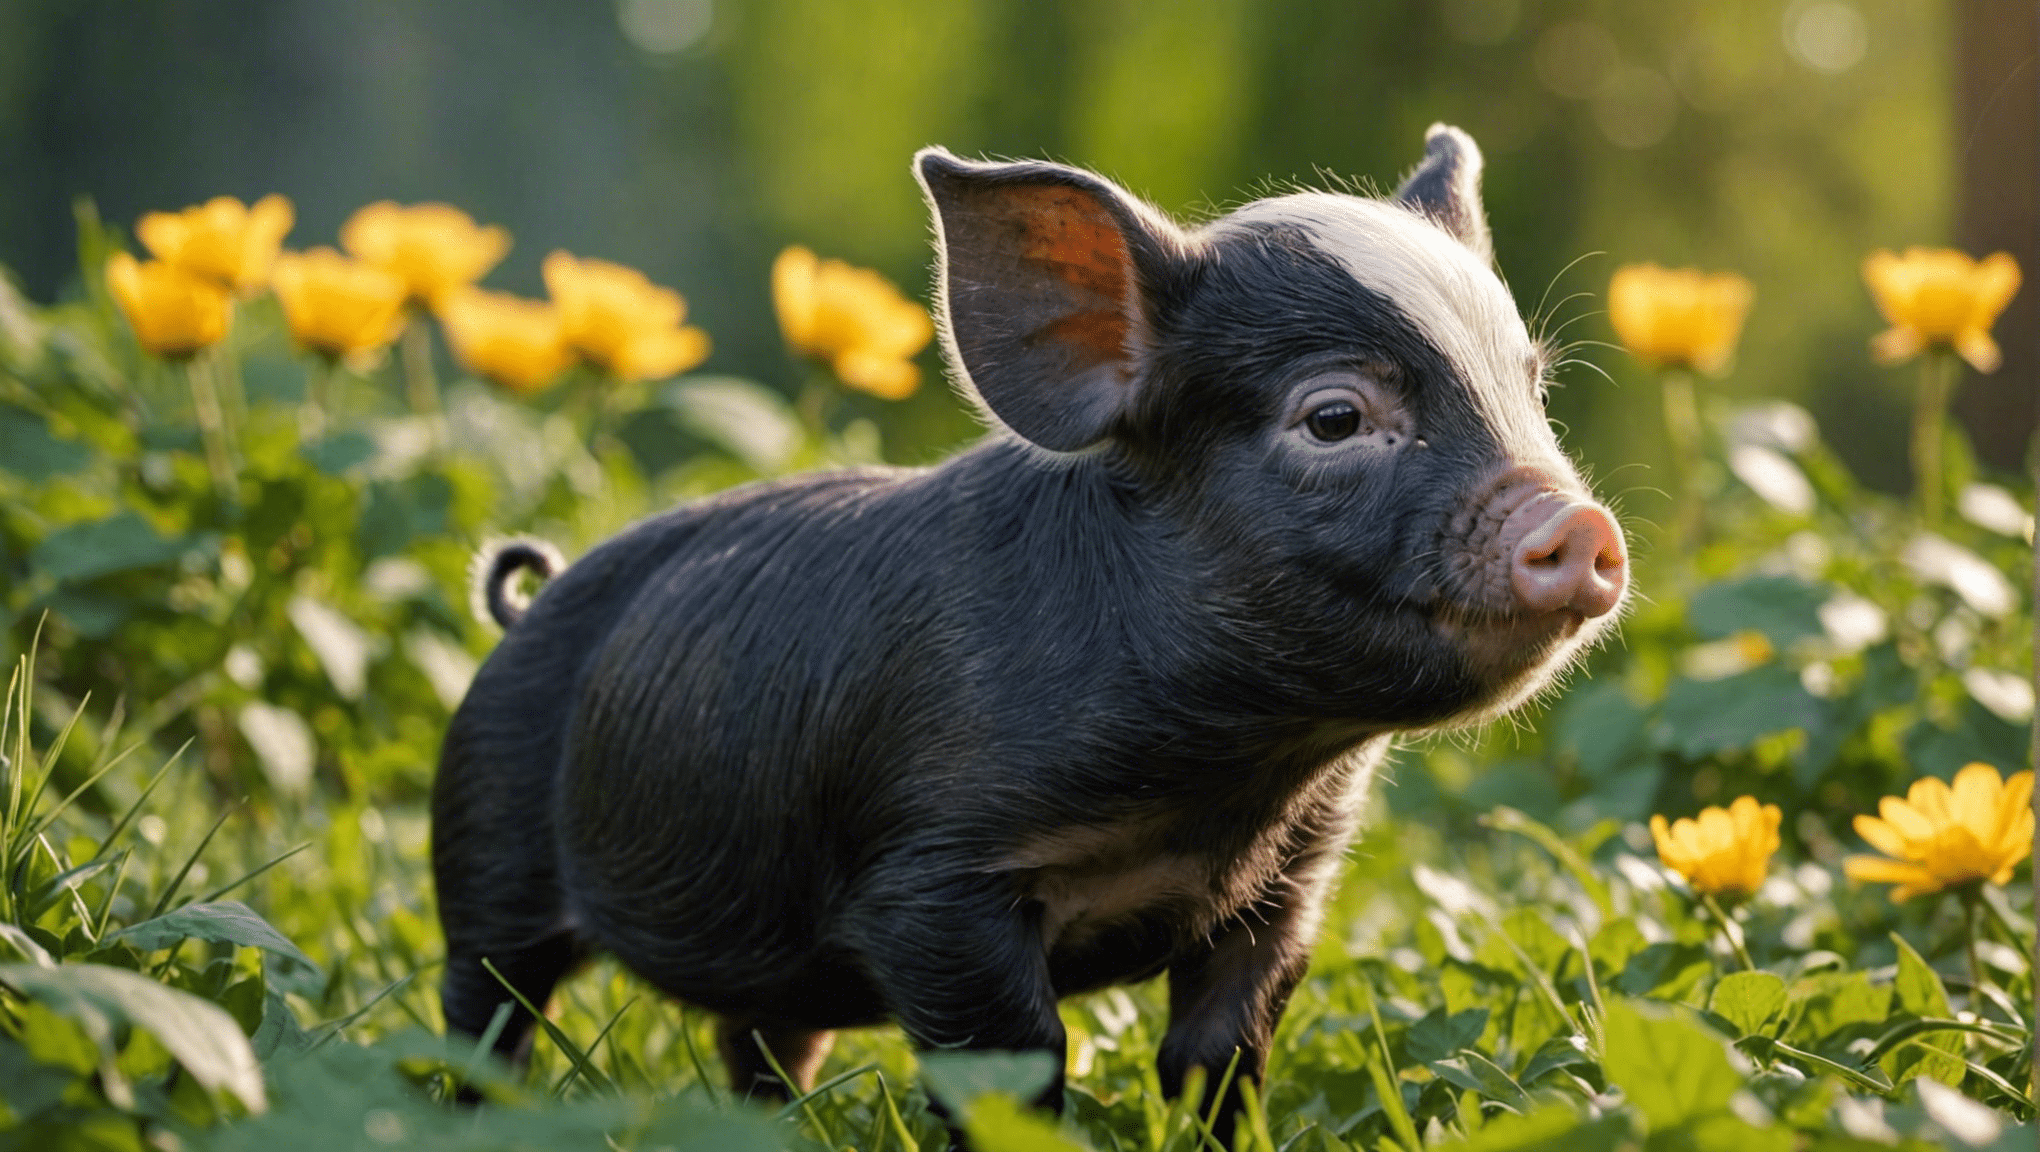 Finden Sie mit unserer Liste süßer Namen für Schweinchen entzückende und einzigartige Namen für neugeborene Ferkel. Entdecken Sie den perfekten Spitznamen für Ihr kleines Ferkel!